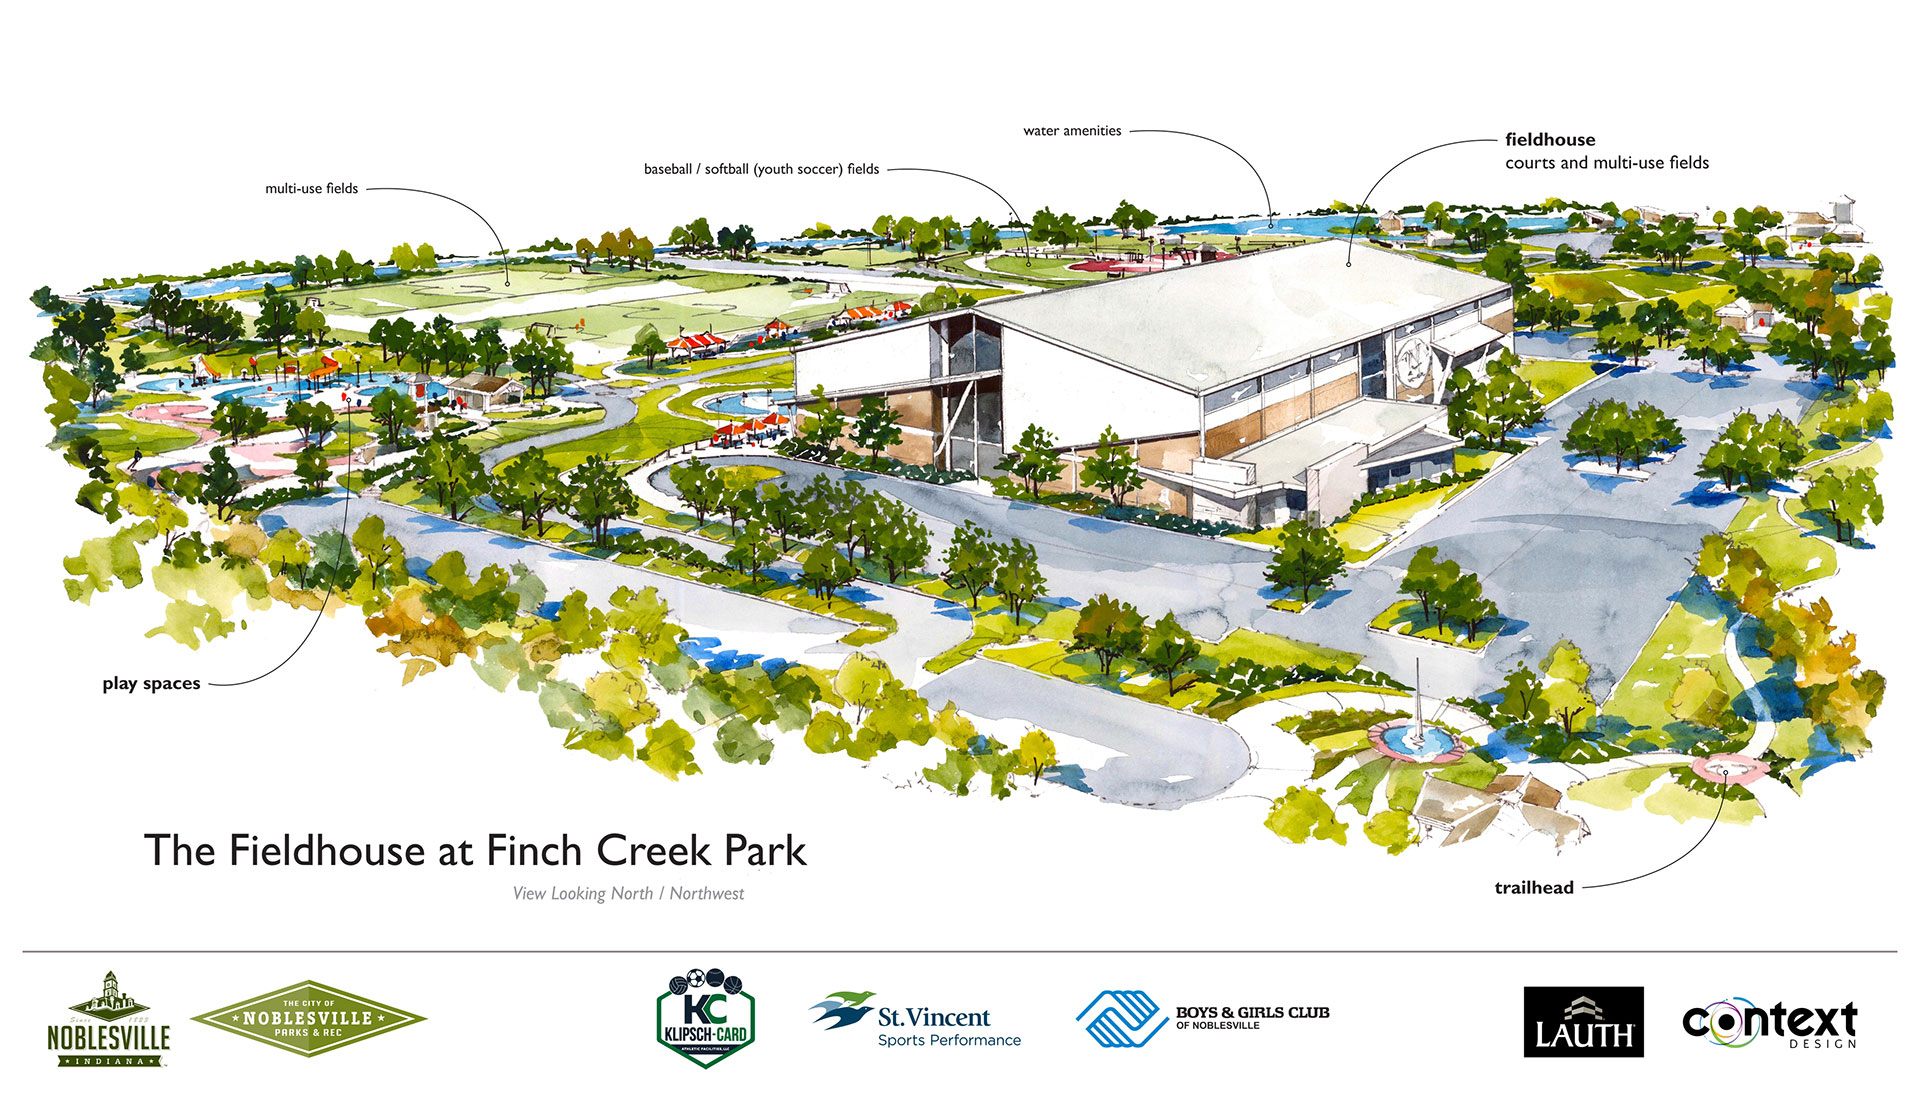 City Announces New Noblesville Fieldhouse at Finch Creek Park